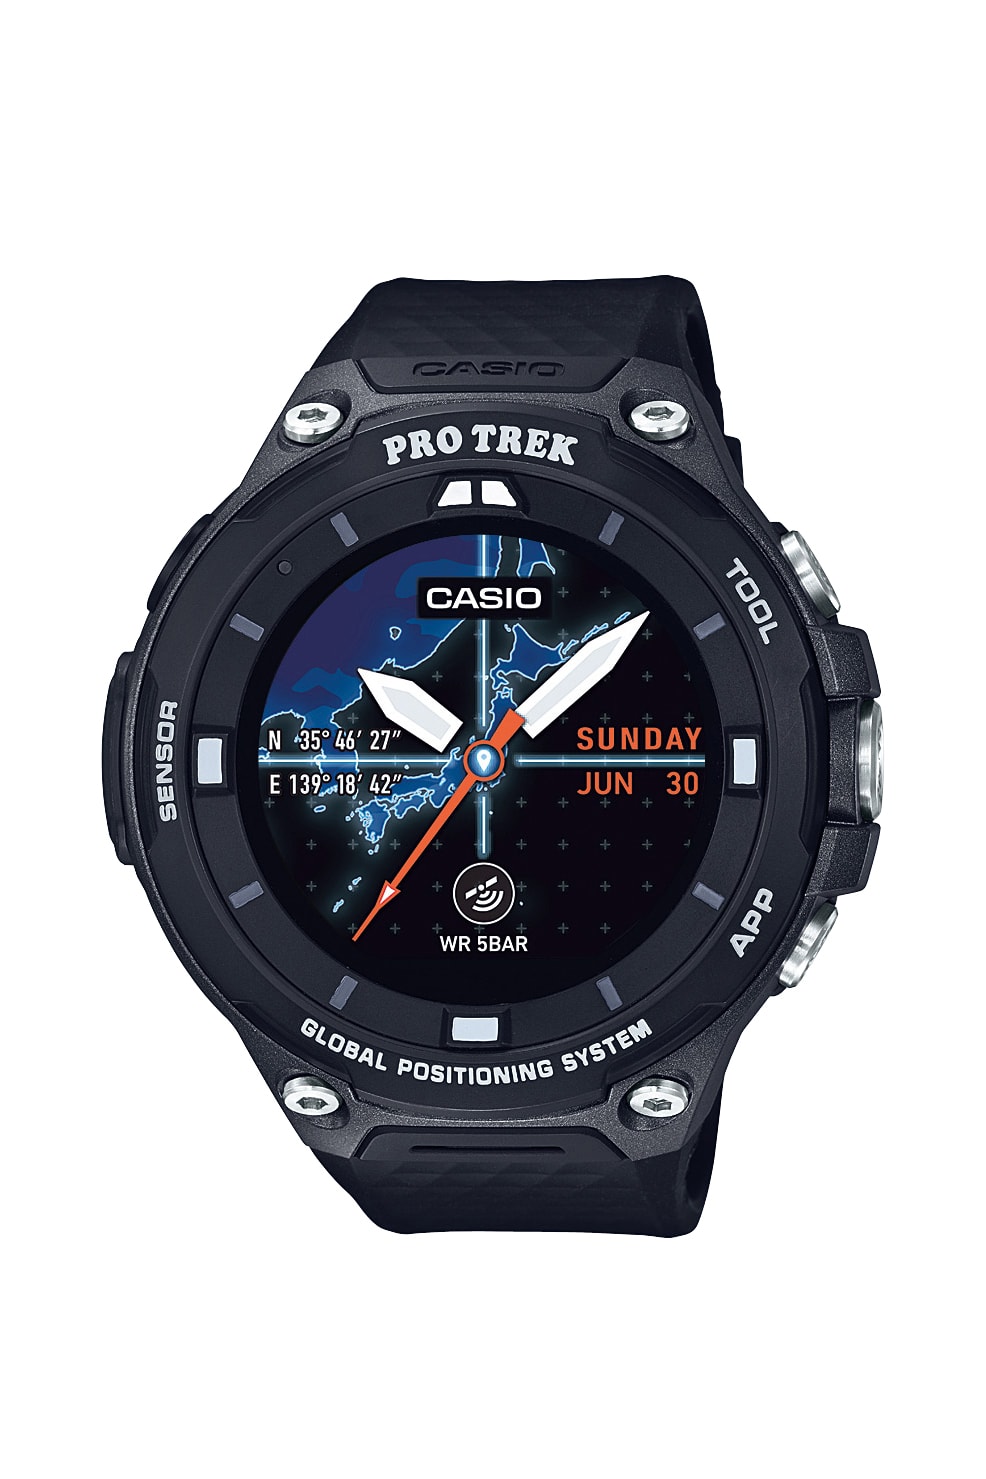 CASIO 全新第二代戶外智能手錶 WSD-F20 即將上架